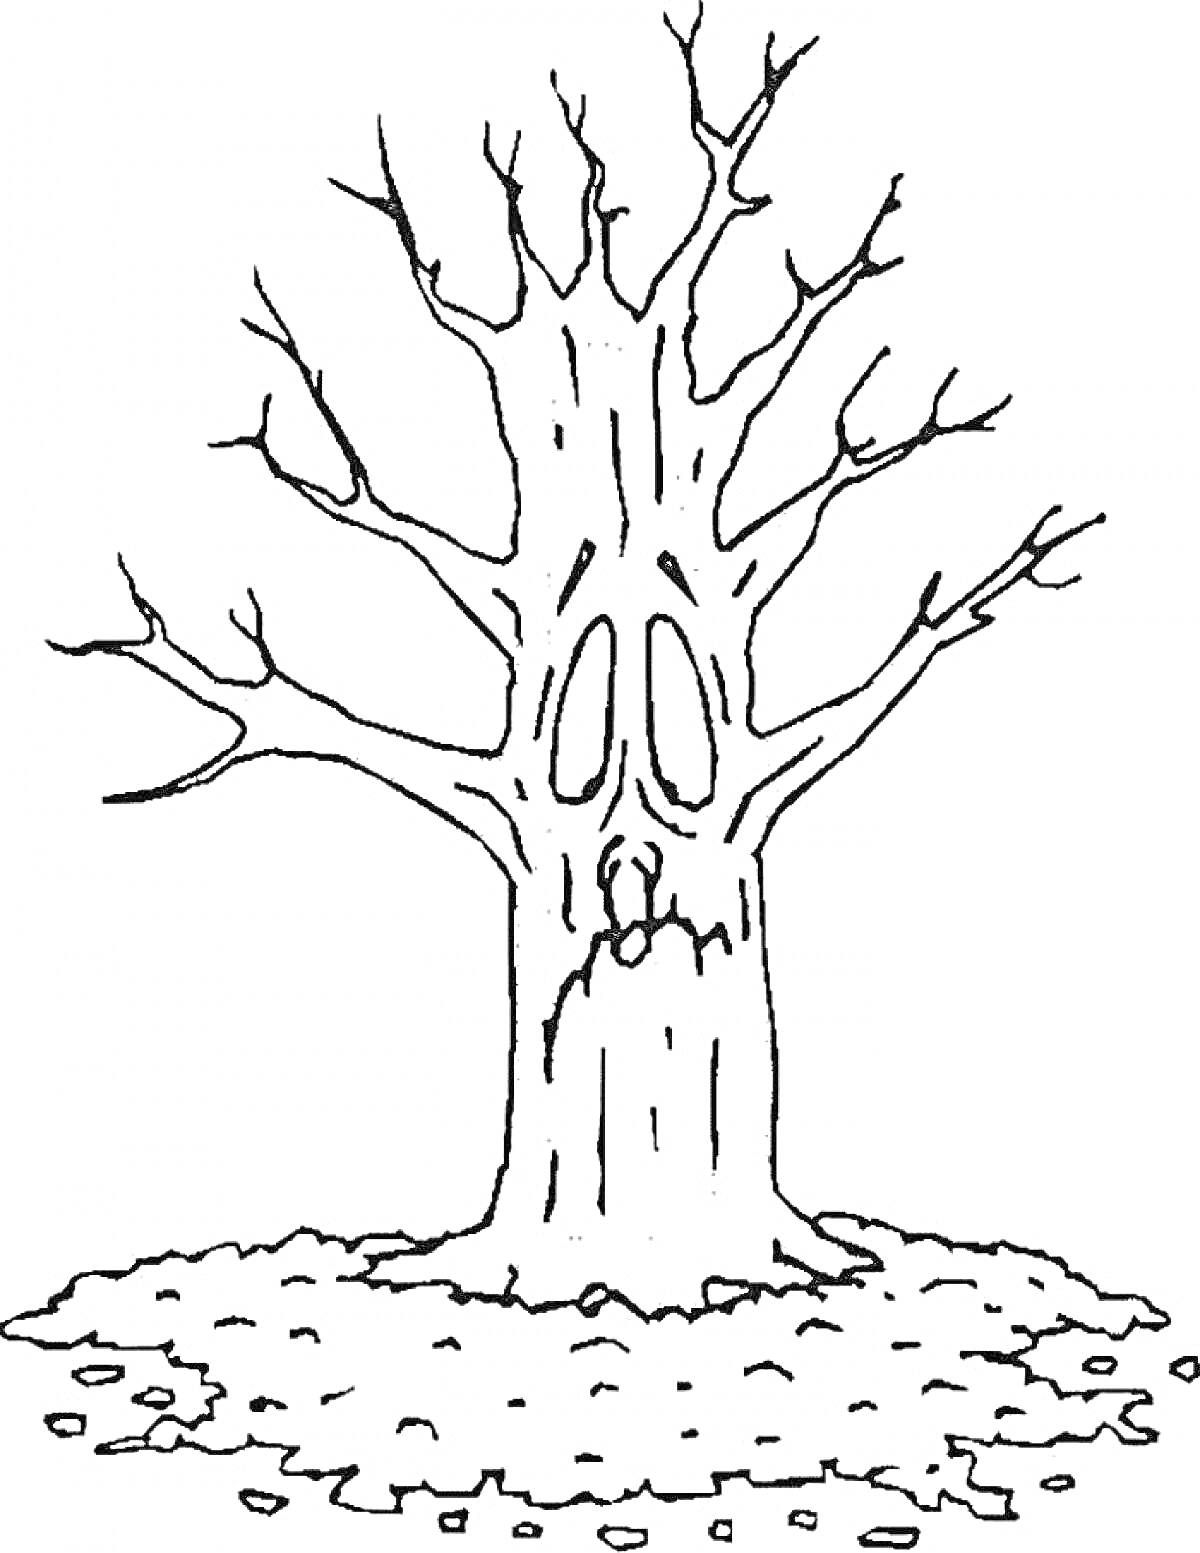 Раскраска Дерево без листьев с опадающими листьями на земле